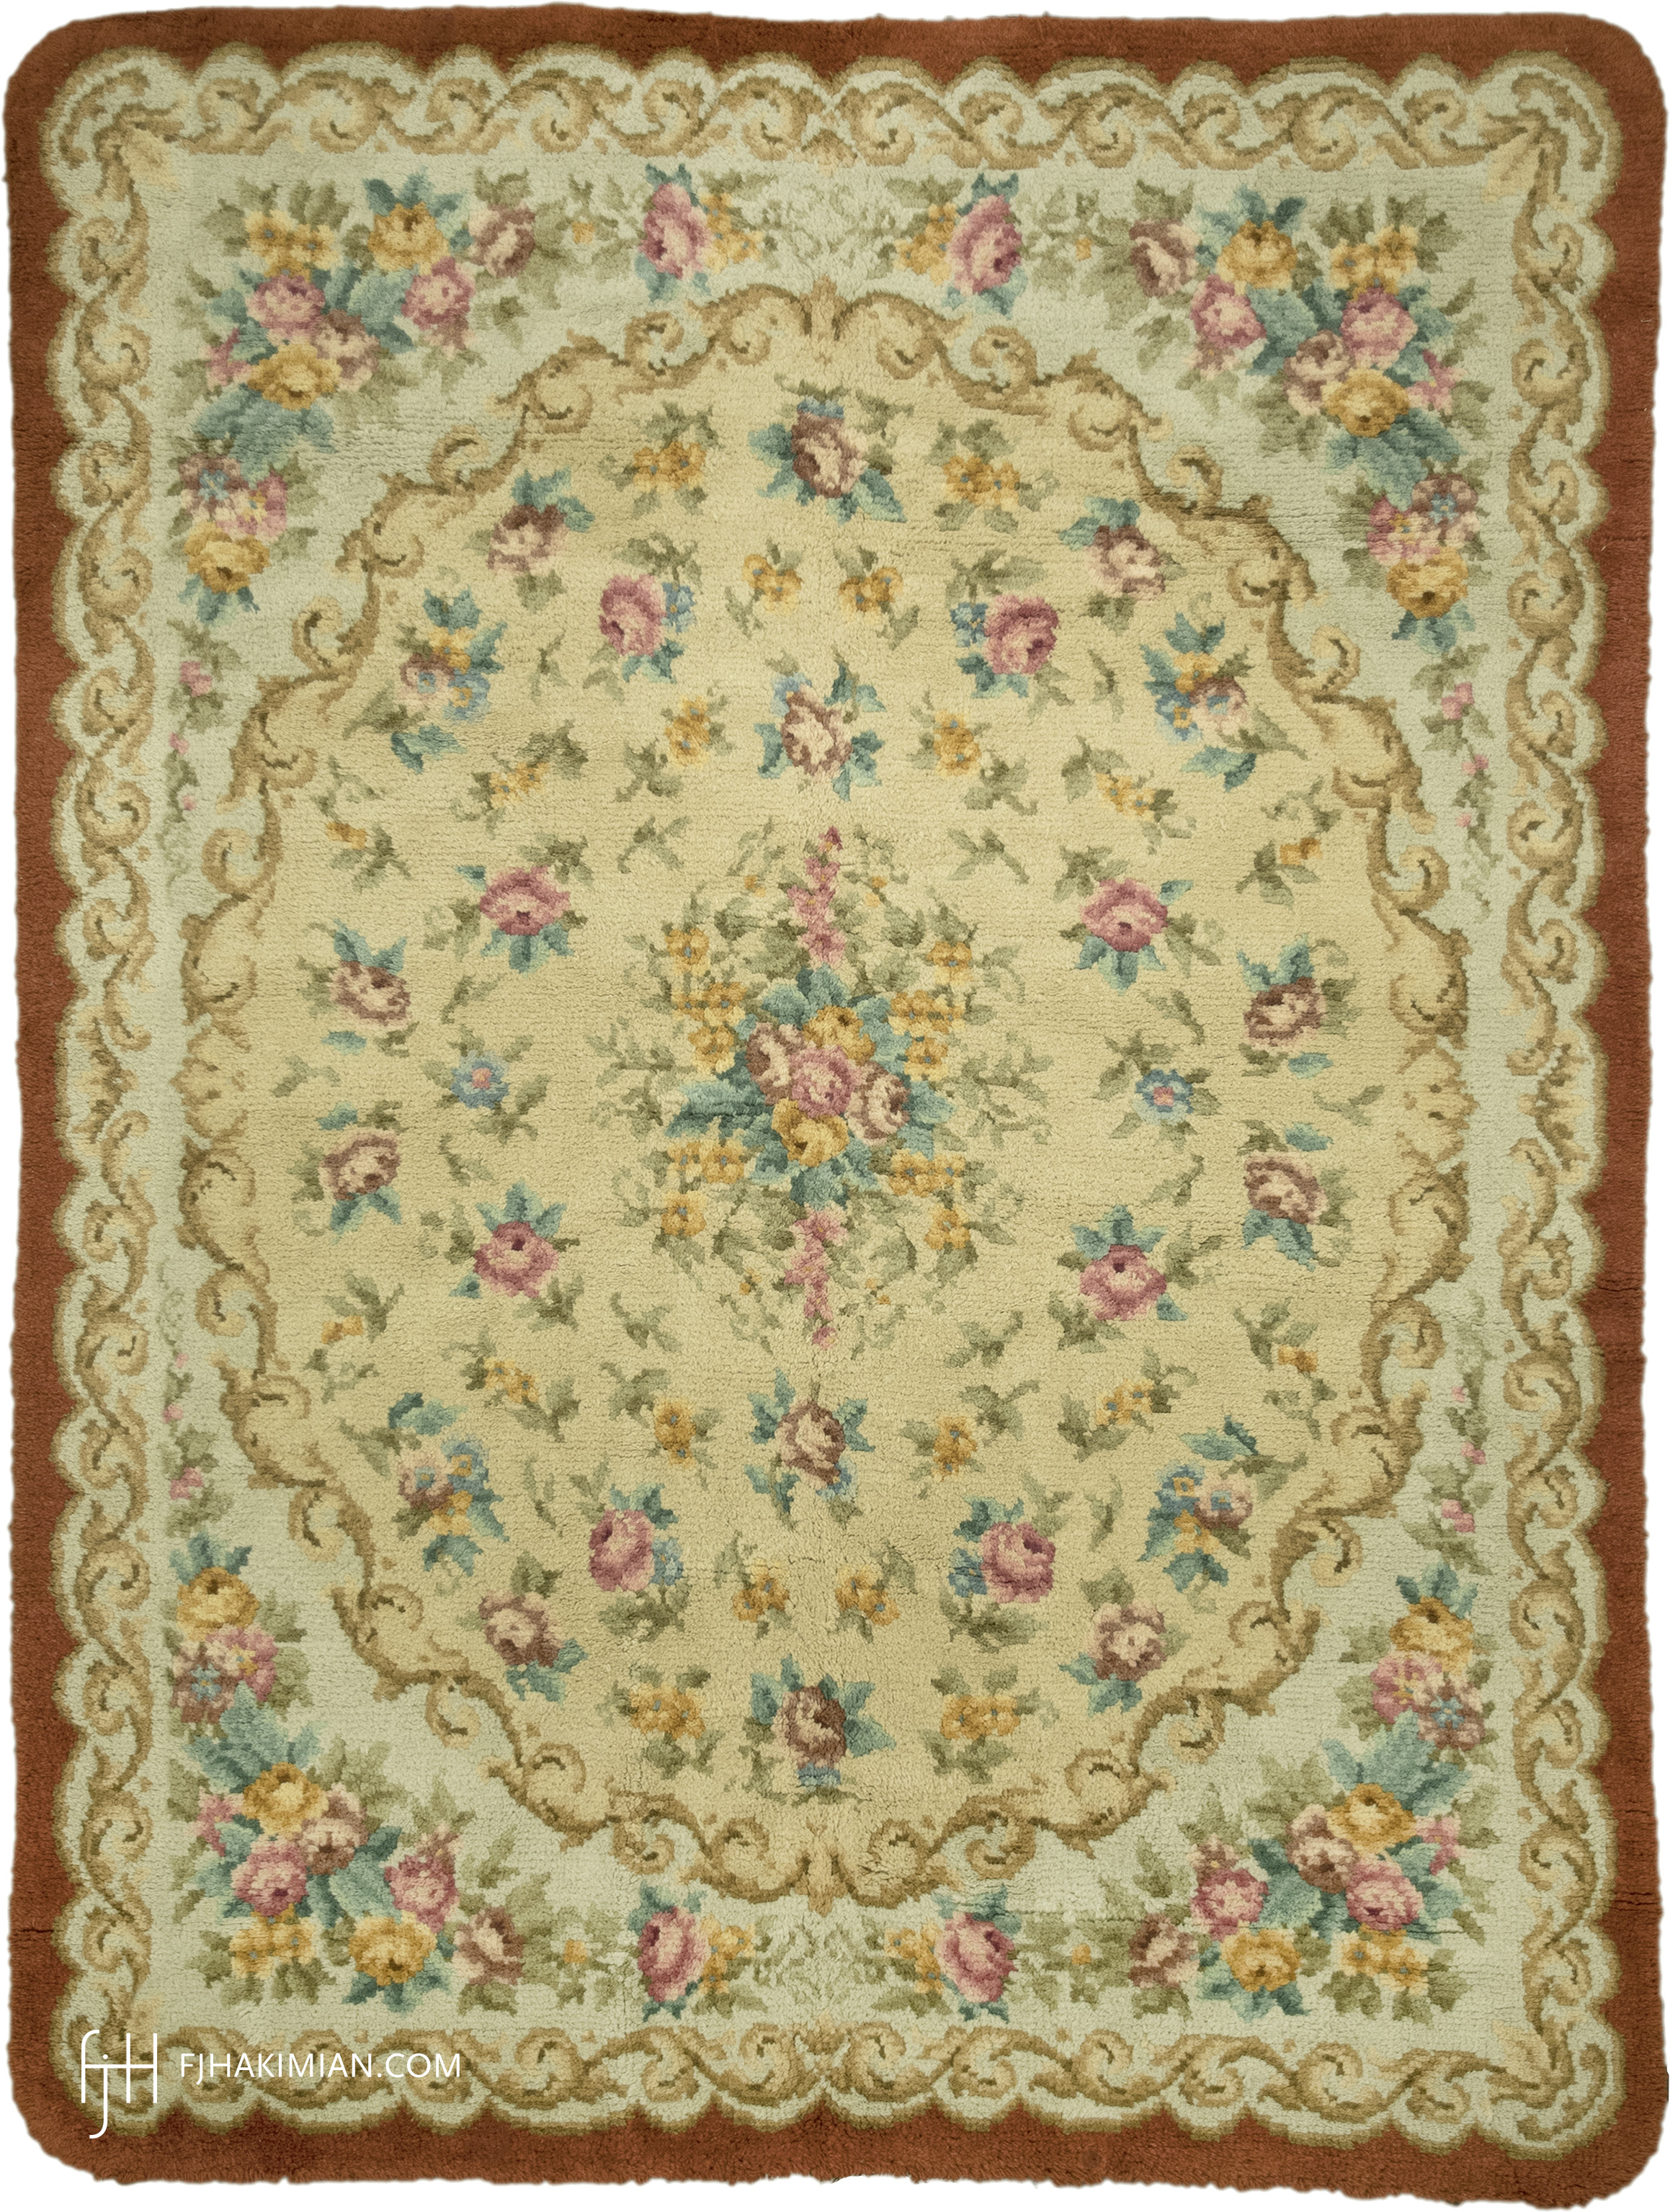 FJ Hakimian | 03082 | Vintage Carpet